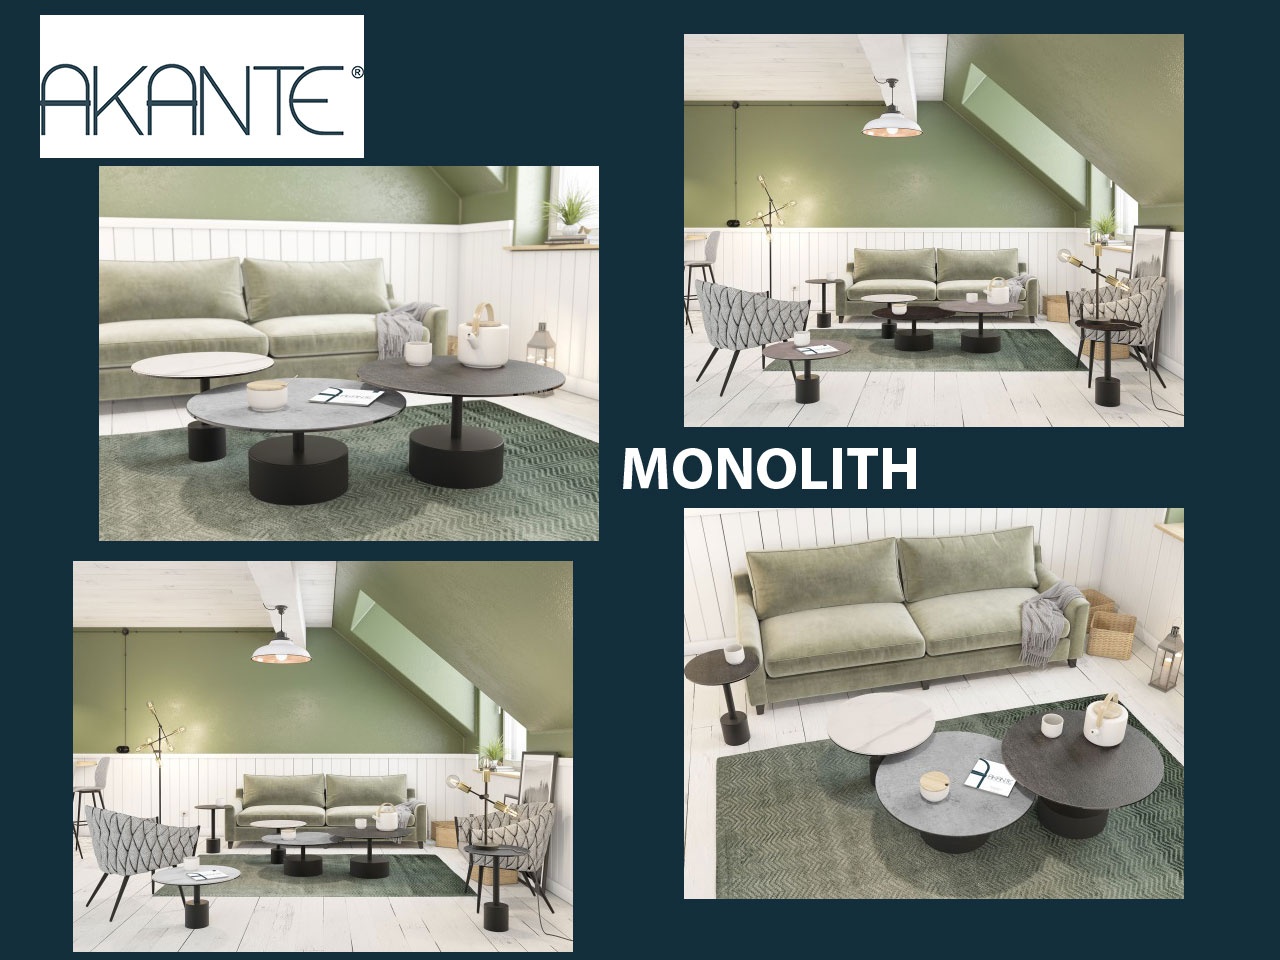 AKANTE présente MONOLITH une collection personnalisable de tables basses et bouts de canapé